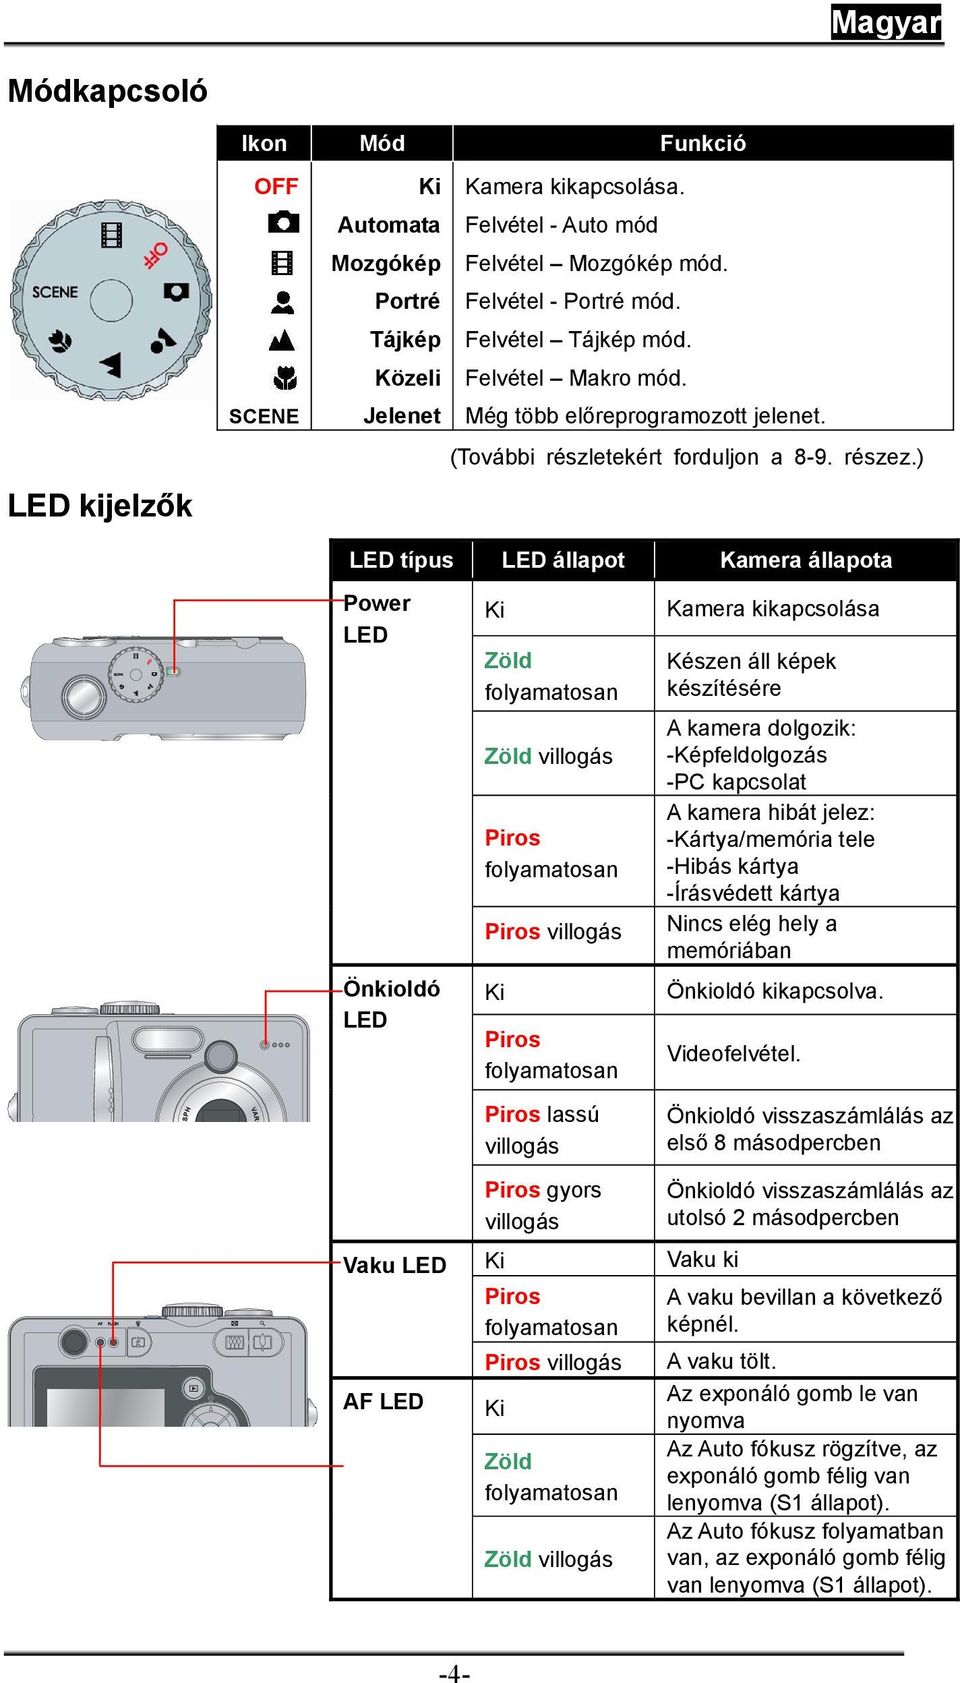 ) LED típus LED állapot Kamera állapota OFF Power LED Ki Zöld folyamatosan Zöld villogás Piros folyamatosan Piros villogás Kamera kikapcsolása Készen áll képek készítésére A kamera dolgozik: